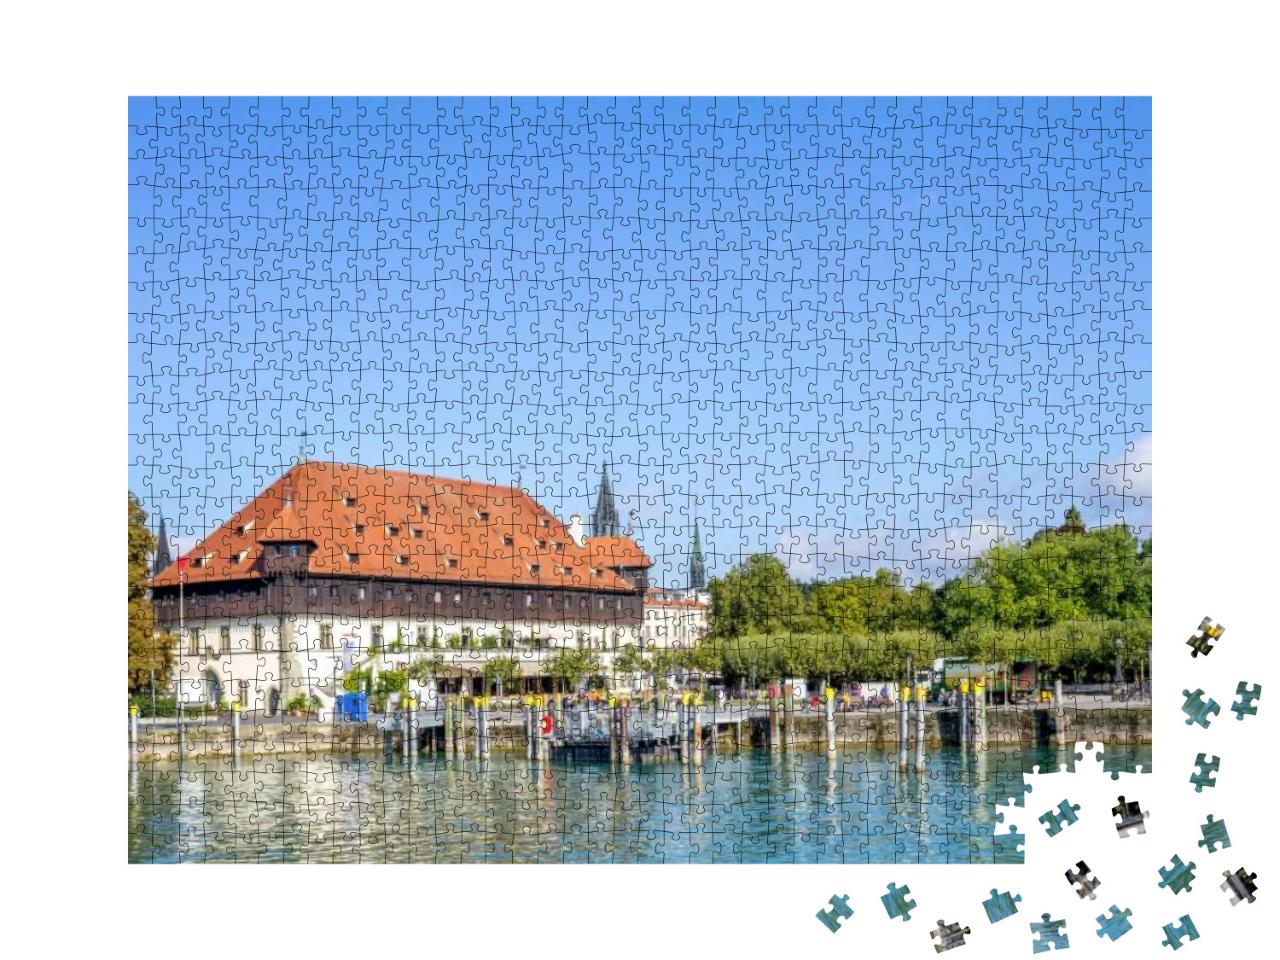 Konzil, Konstanz... Jigsaw Puzzle with 1000 pieces